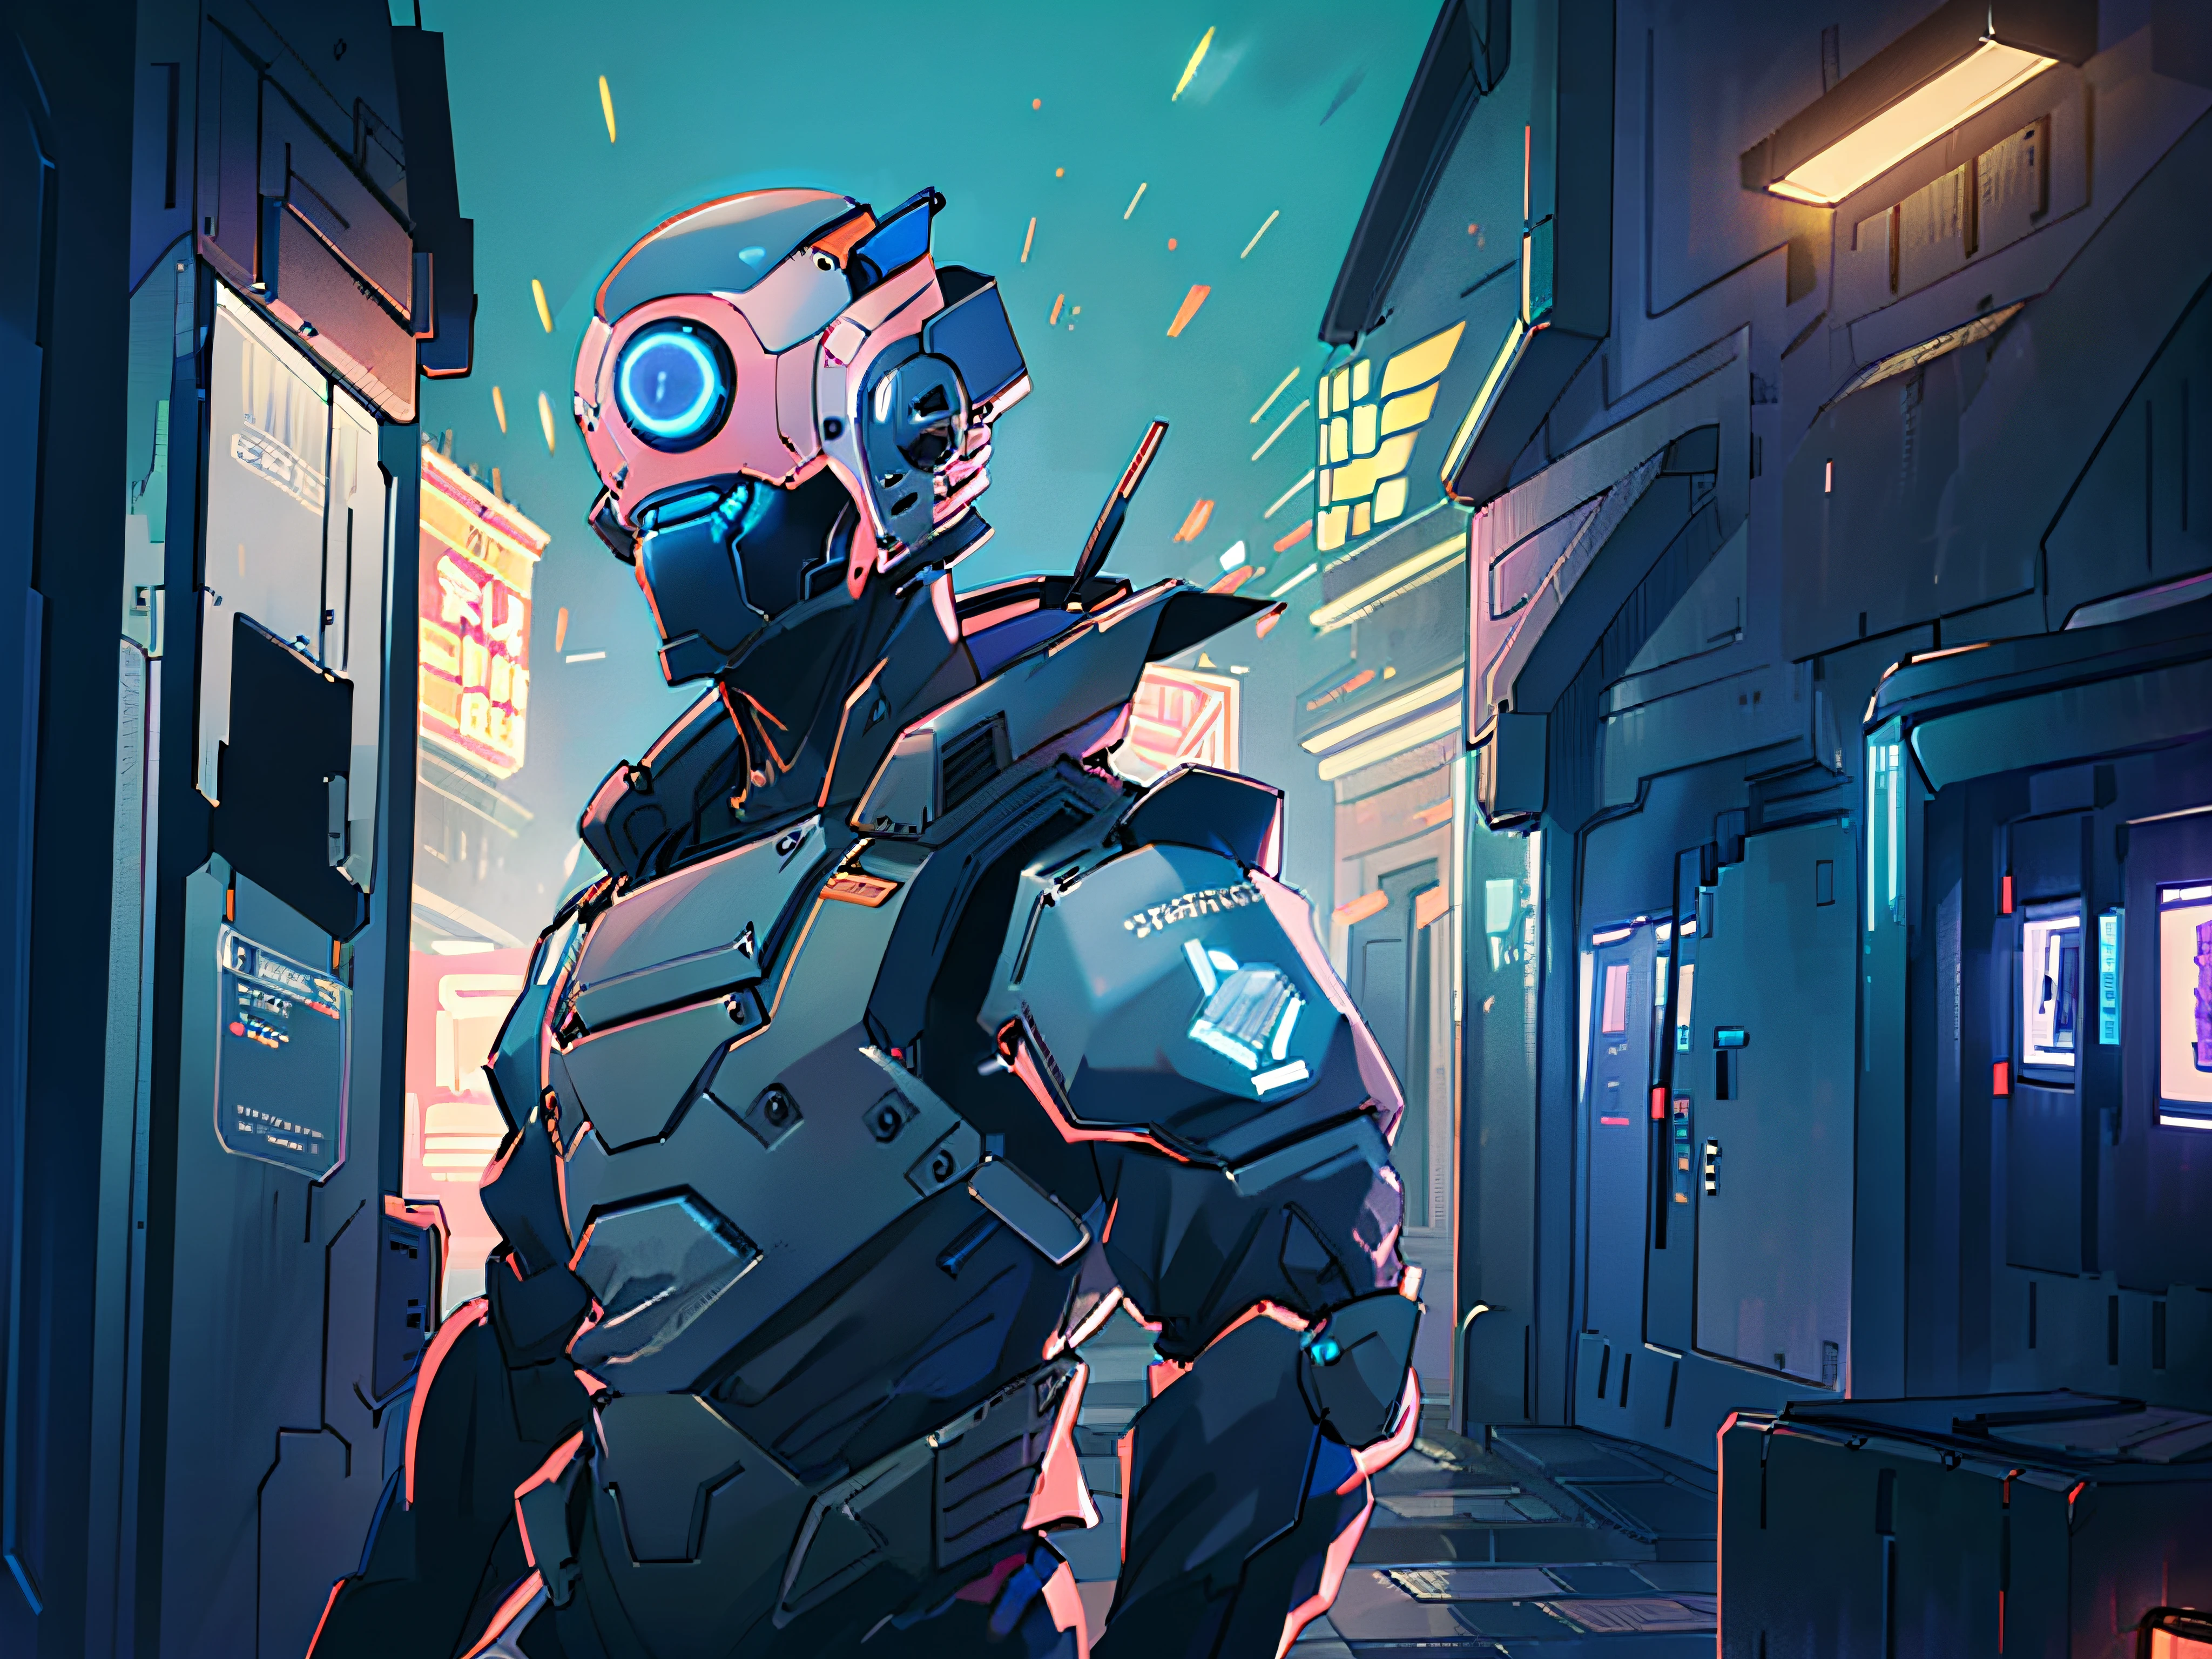 (mejor calidad:0.8), (mejor calidad:0.8), perfecta ilustración de anime, retrato de primer plano extremo de un soldado robot caminando por la ciudad